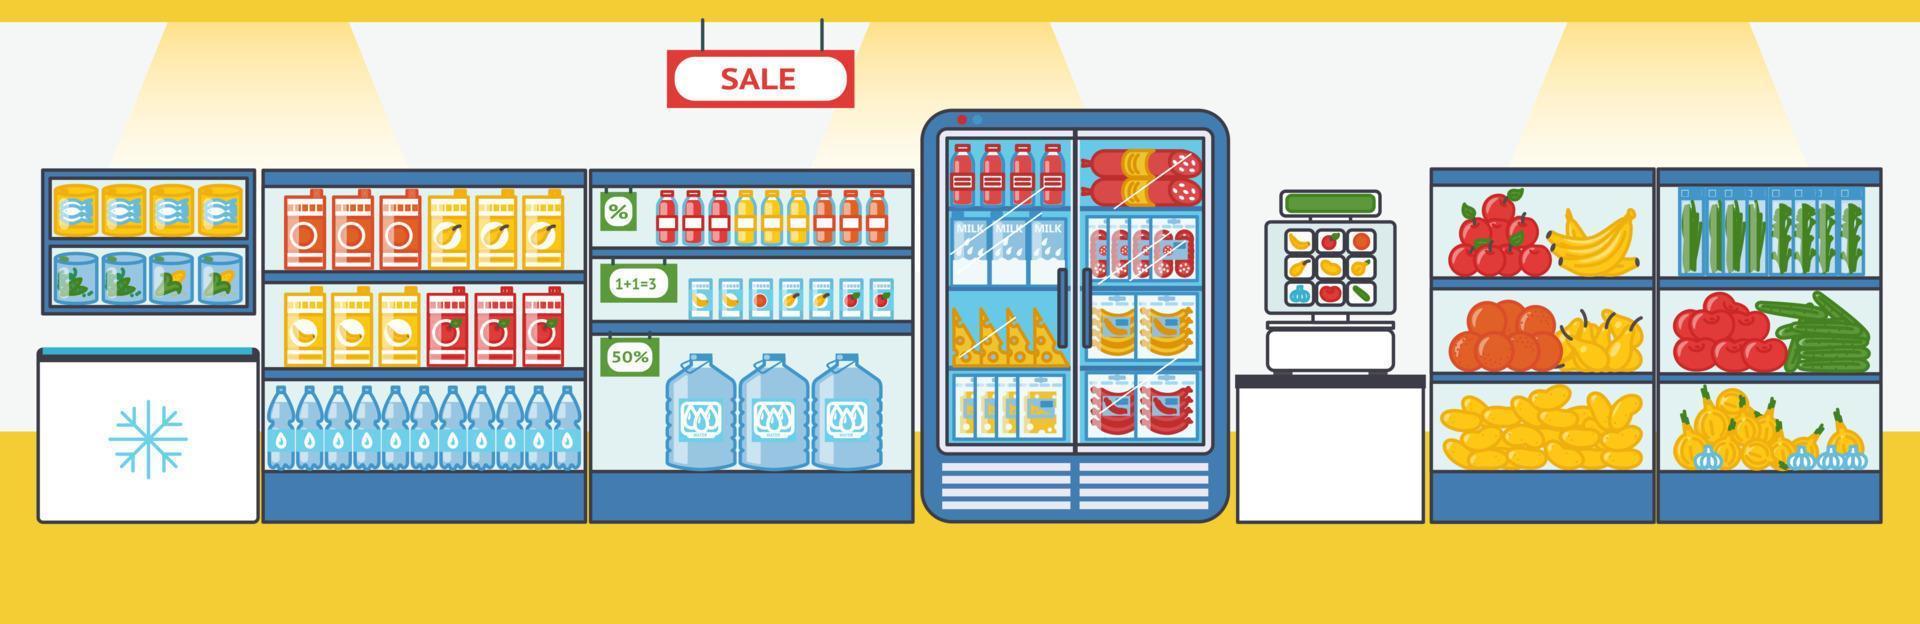 supermarkt met producten. schappen en koelkasten met voedsel spullen. vector illustratie